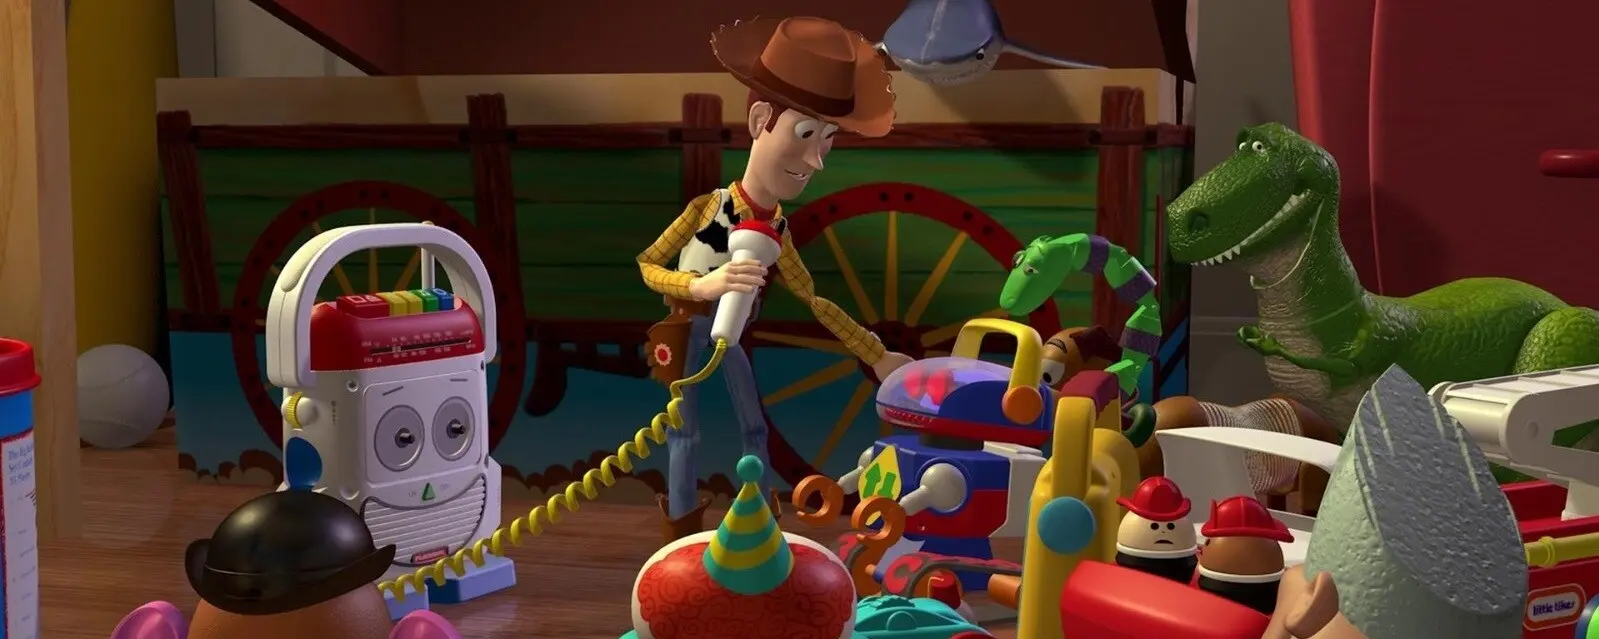 cajas de mudanza toy story - Cómo se llaman las cosas verdes de Toy Story